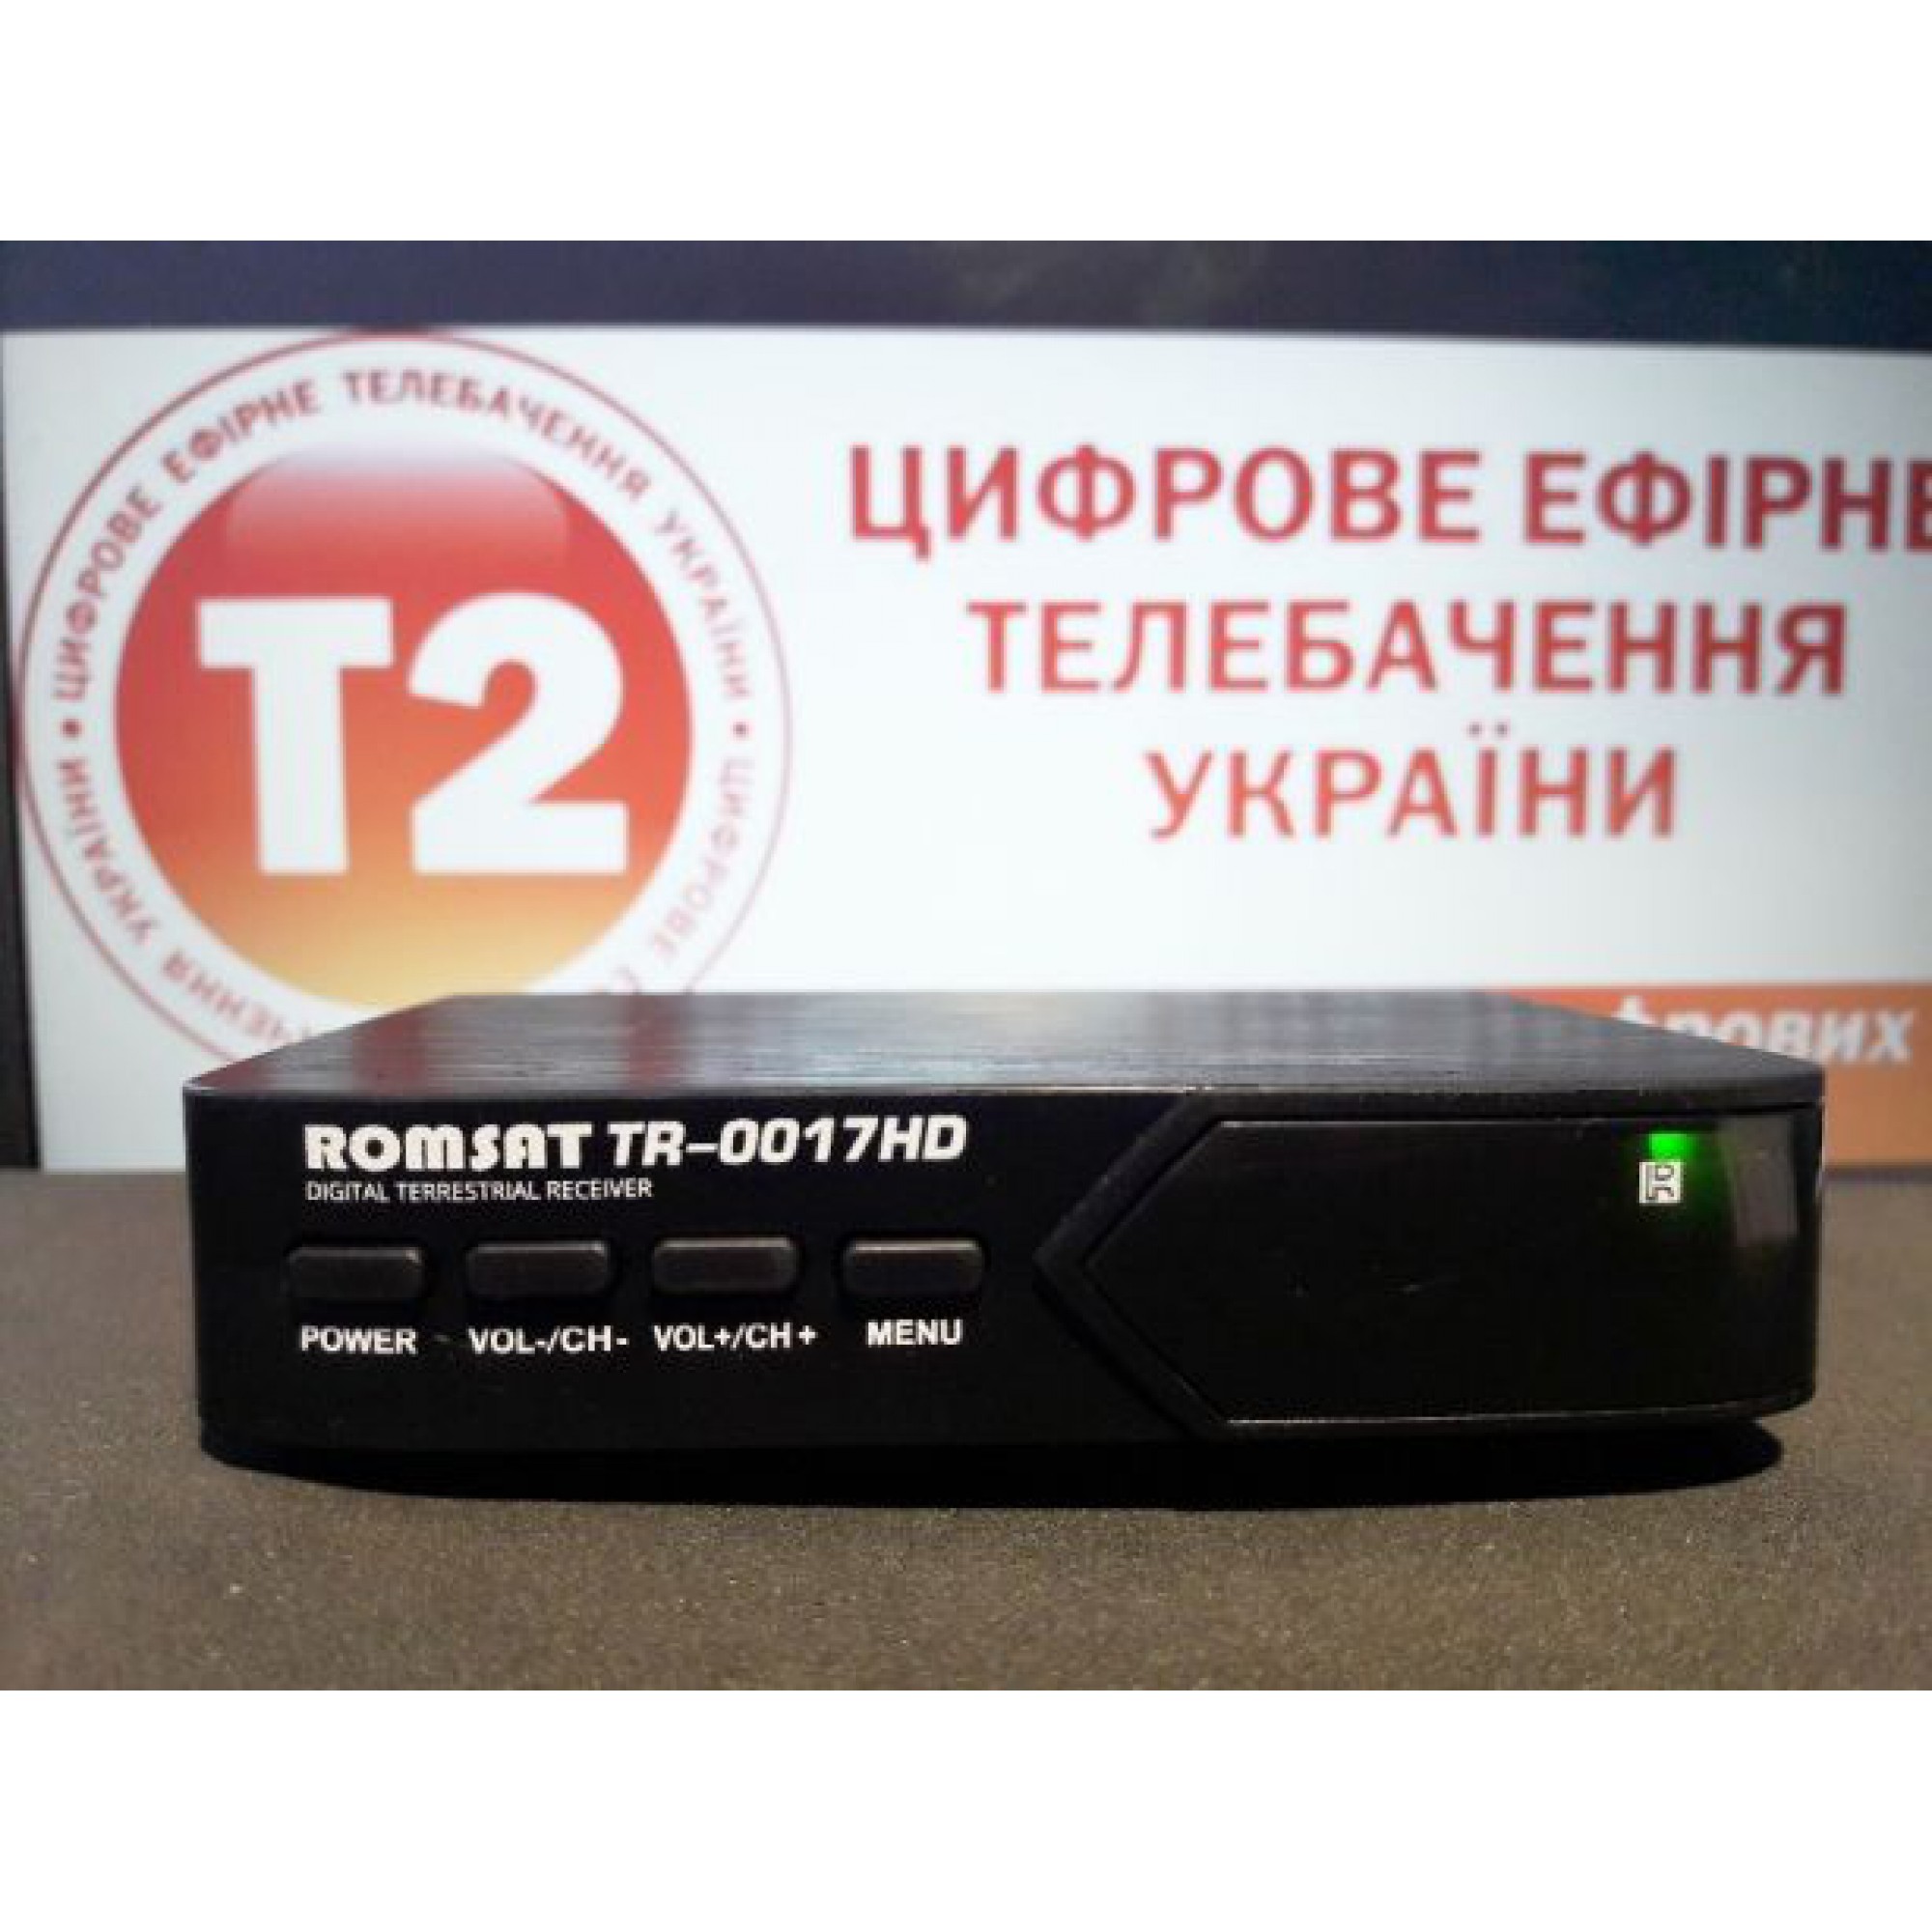 Т2-приставка Romsat TR-1017HD з екраном